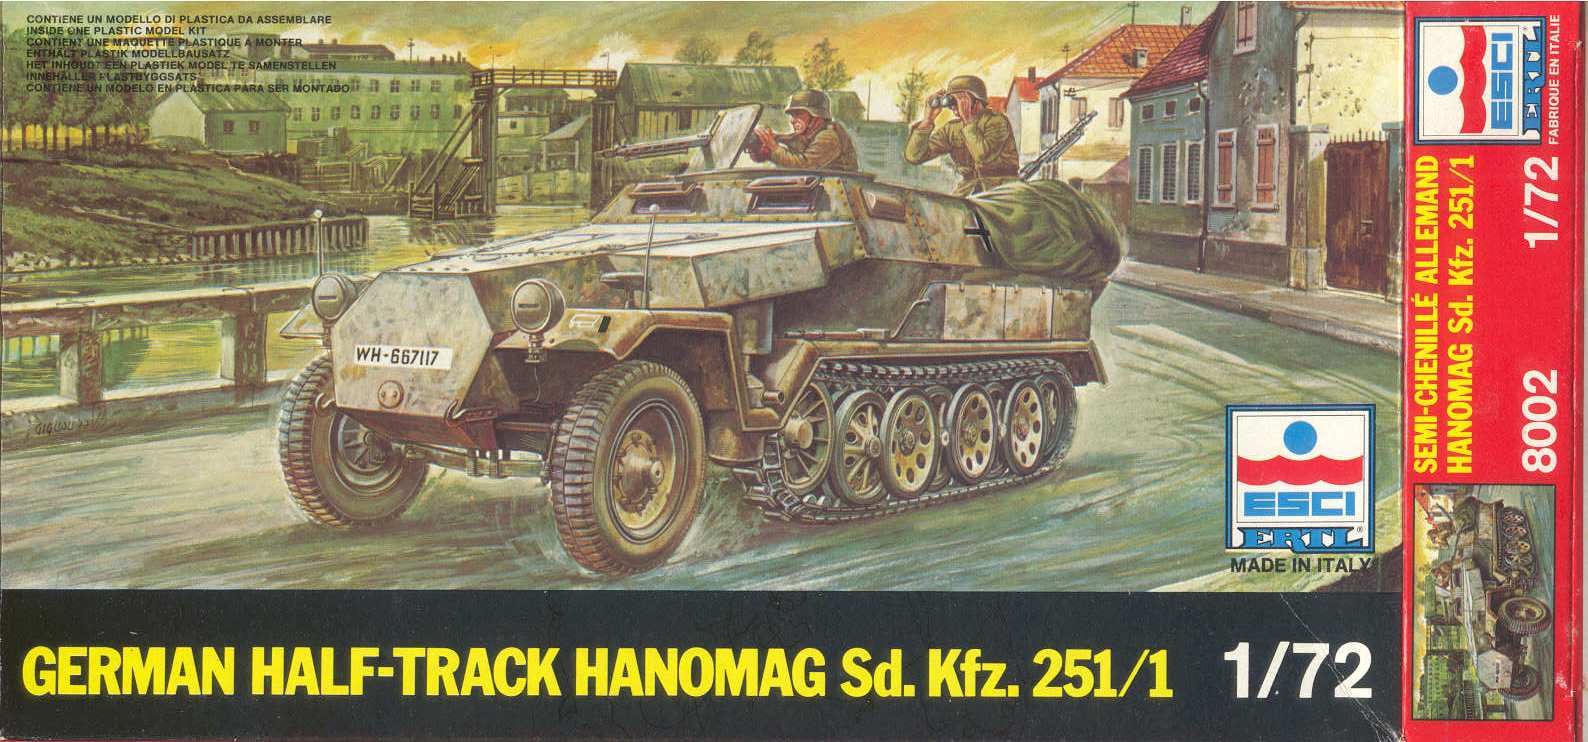 ESCI ERTL 1/72nd scale WWII German Hanomag Halftrack Sd Kfz 251/16 Flamethrowe 